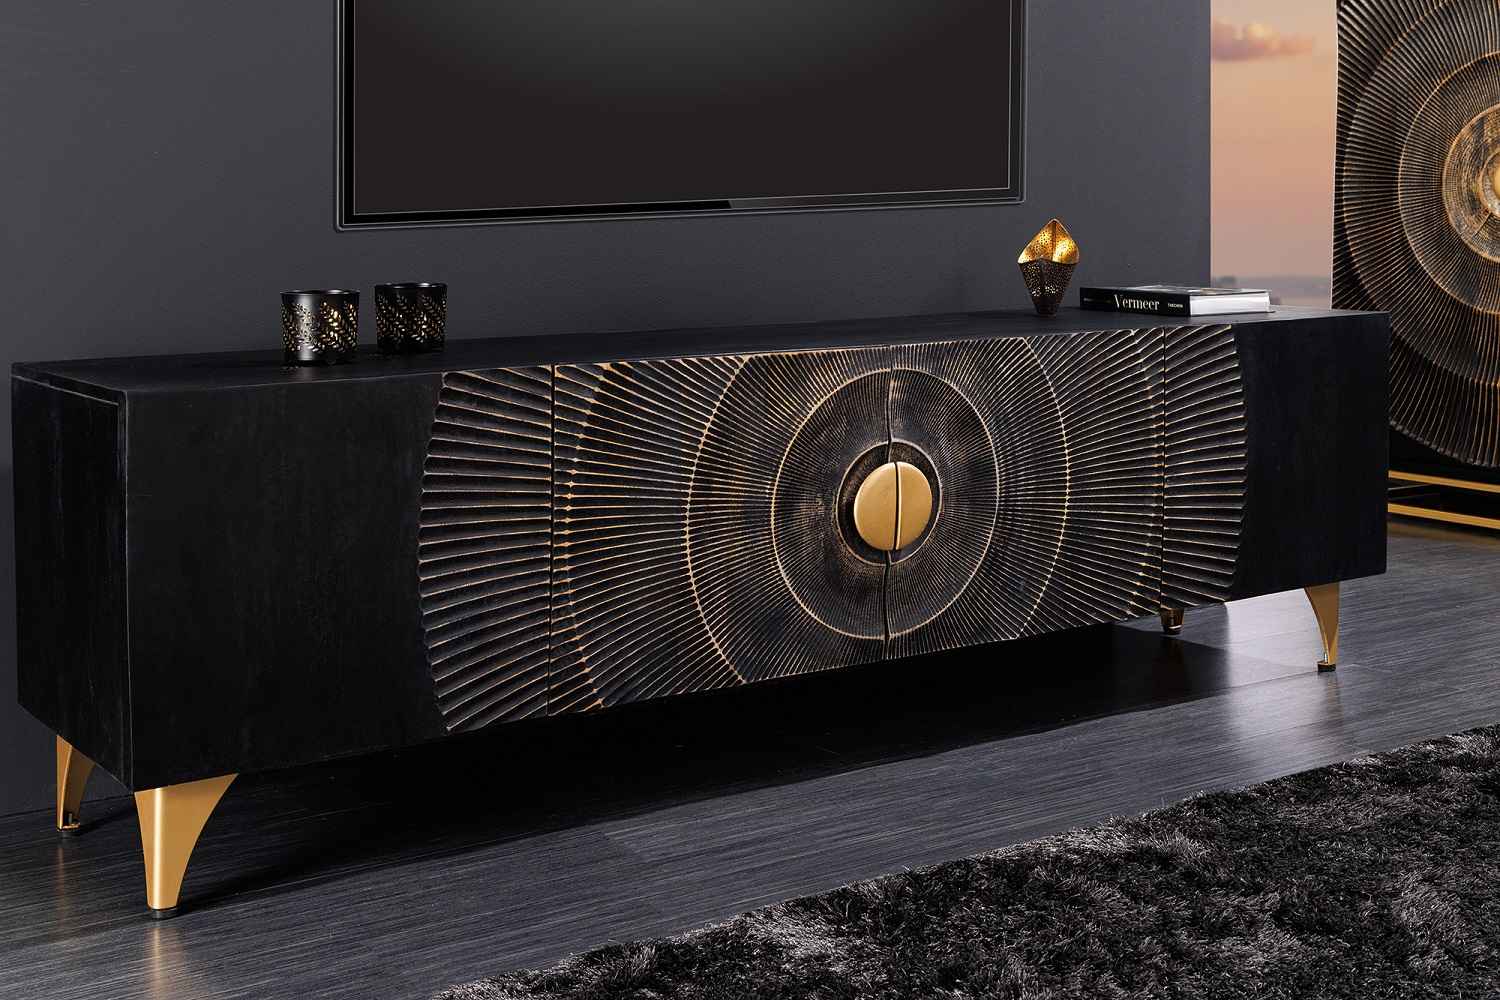 LuxD Designový TV stolek Venetia 180 cm černo-zlatý